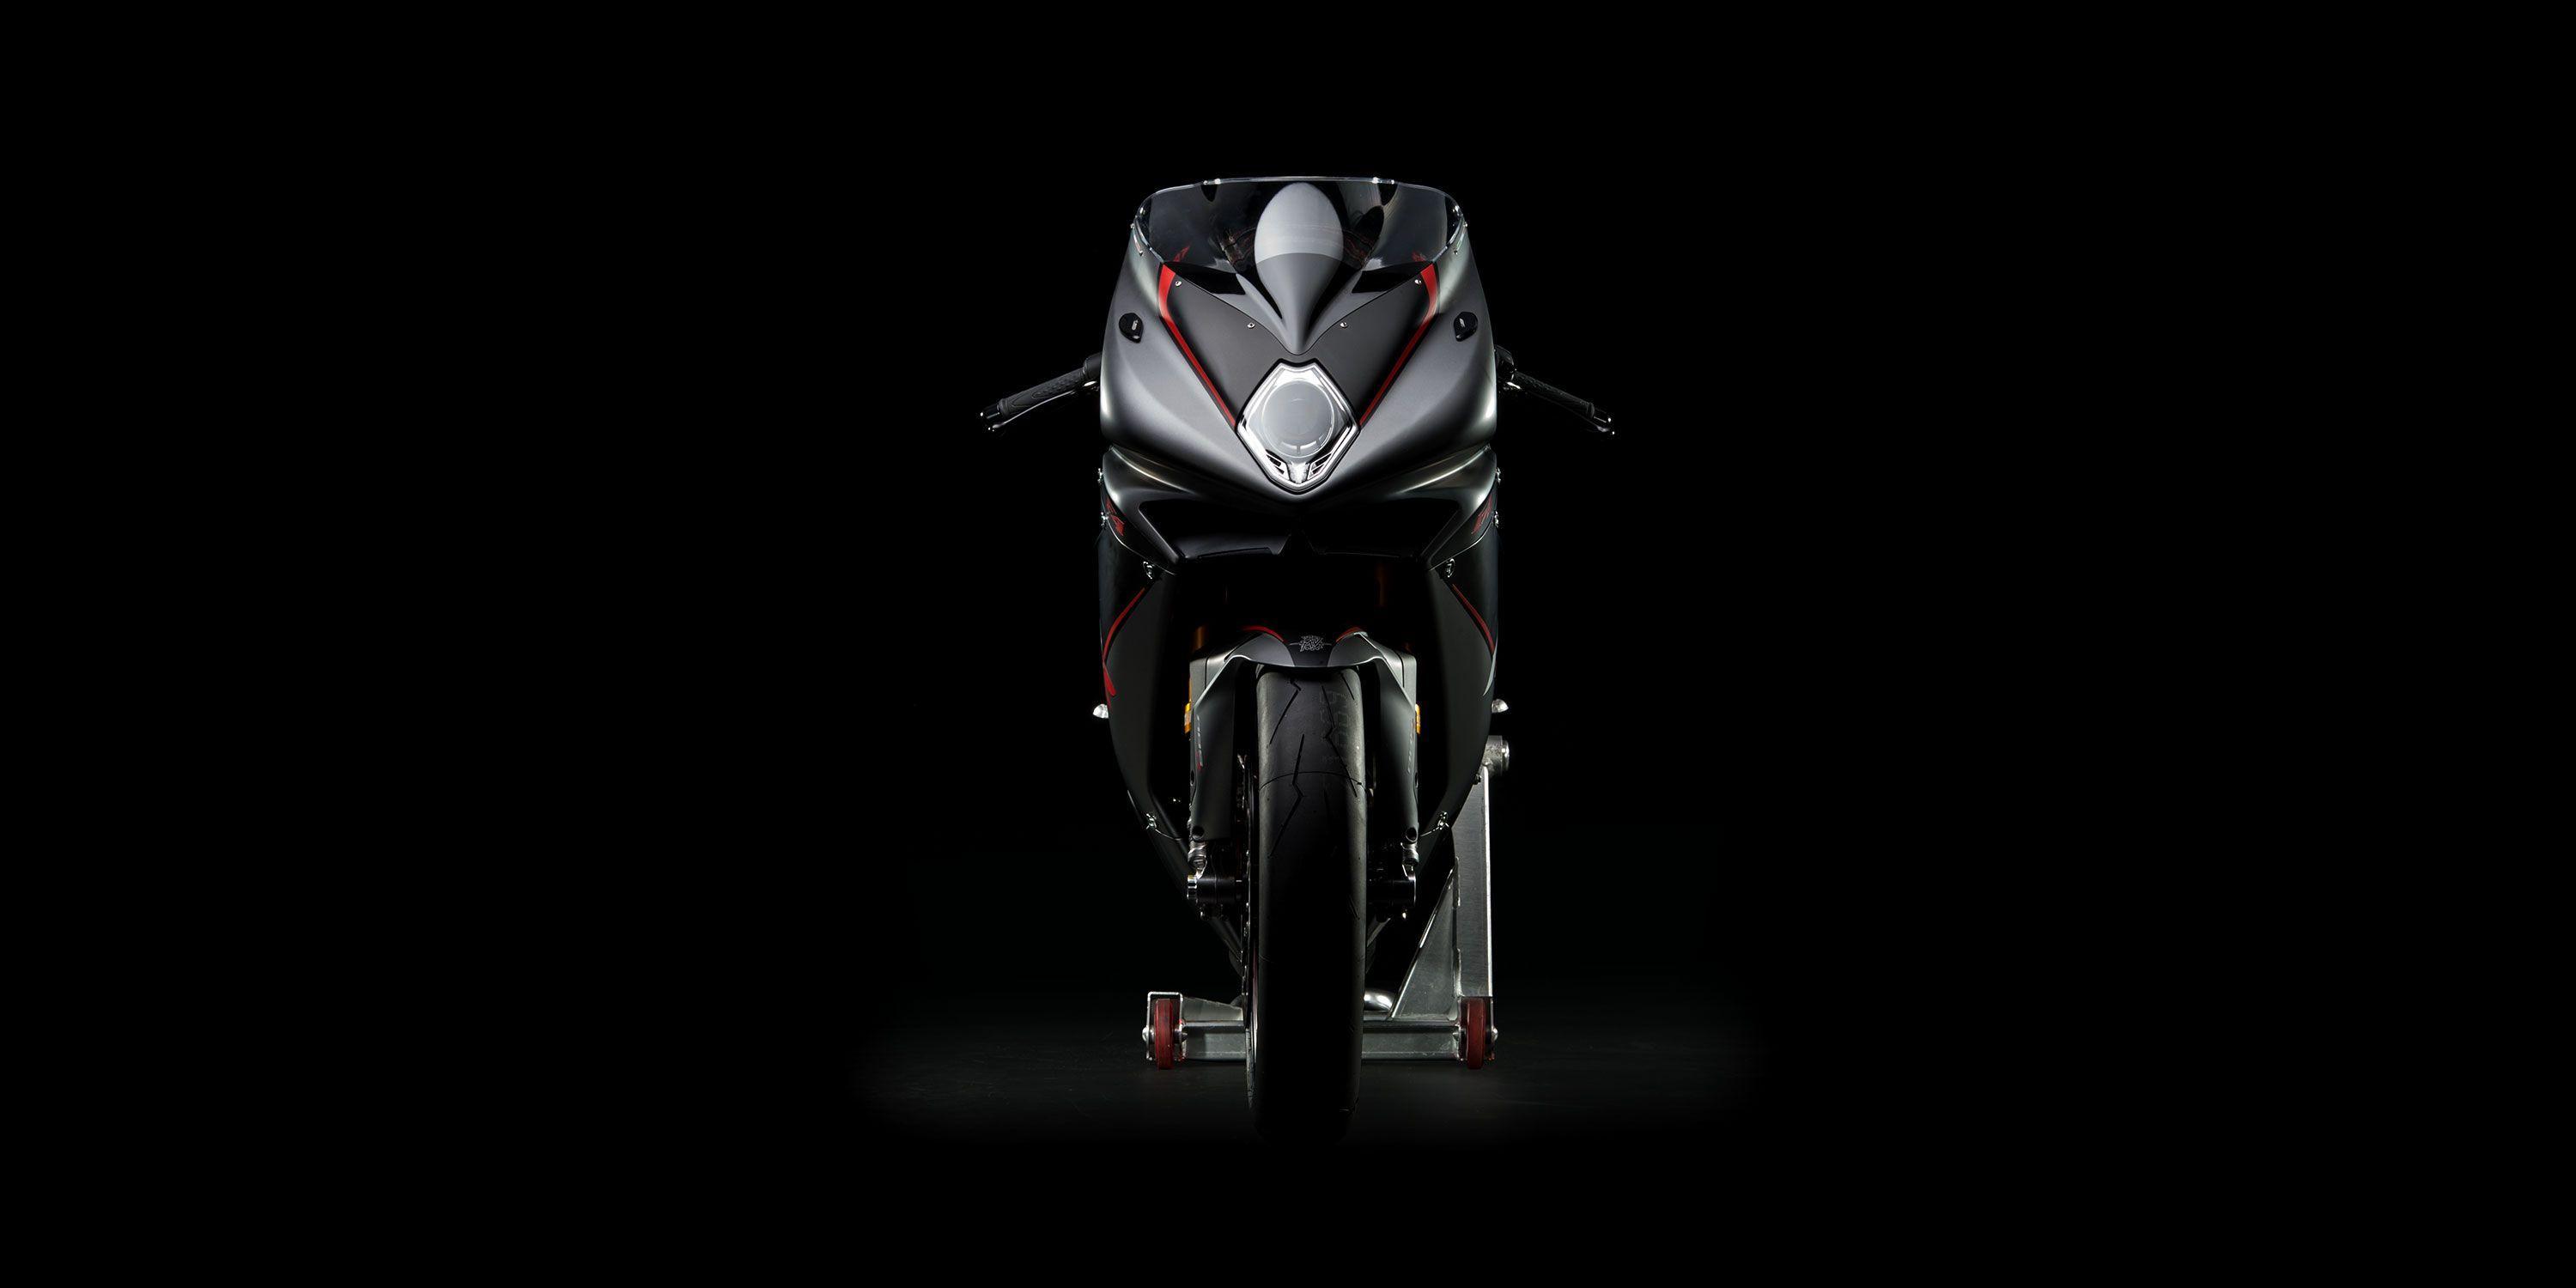 Wallpaper MV Agusta F4 RR, High Performance, Superbikes, HD